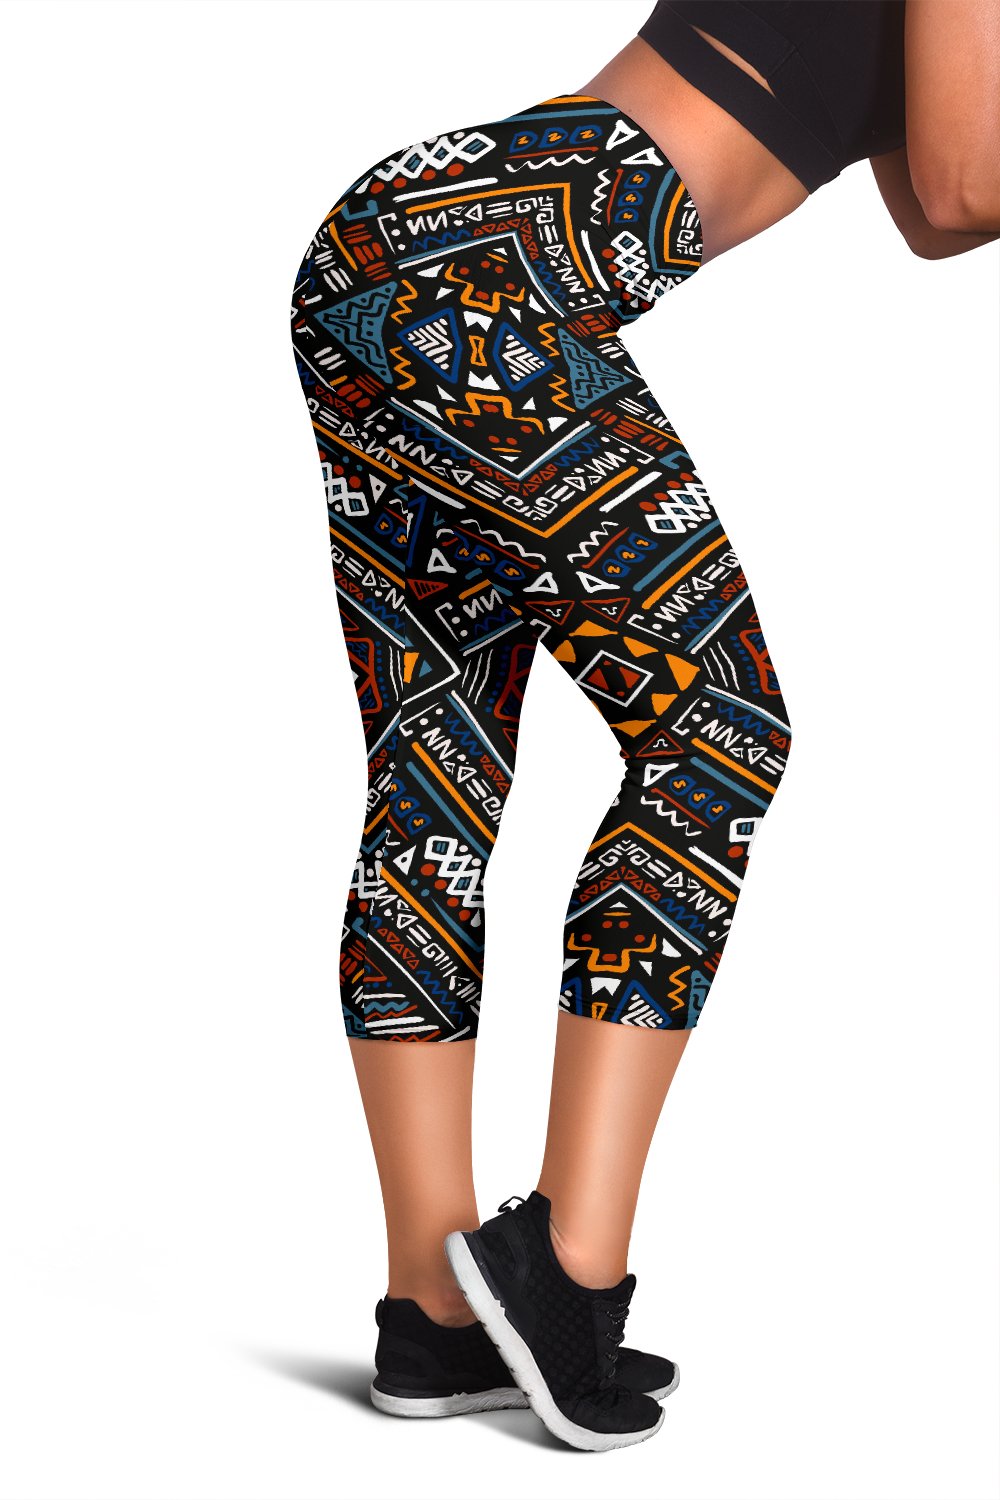 African Kente Pattern Women Capris